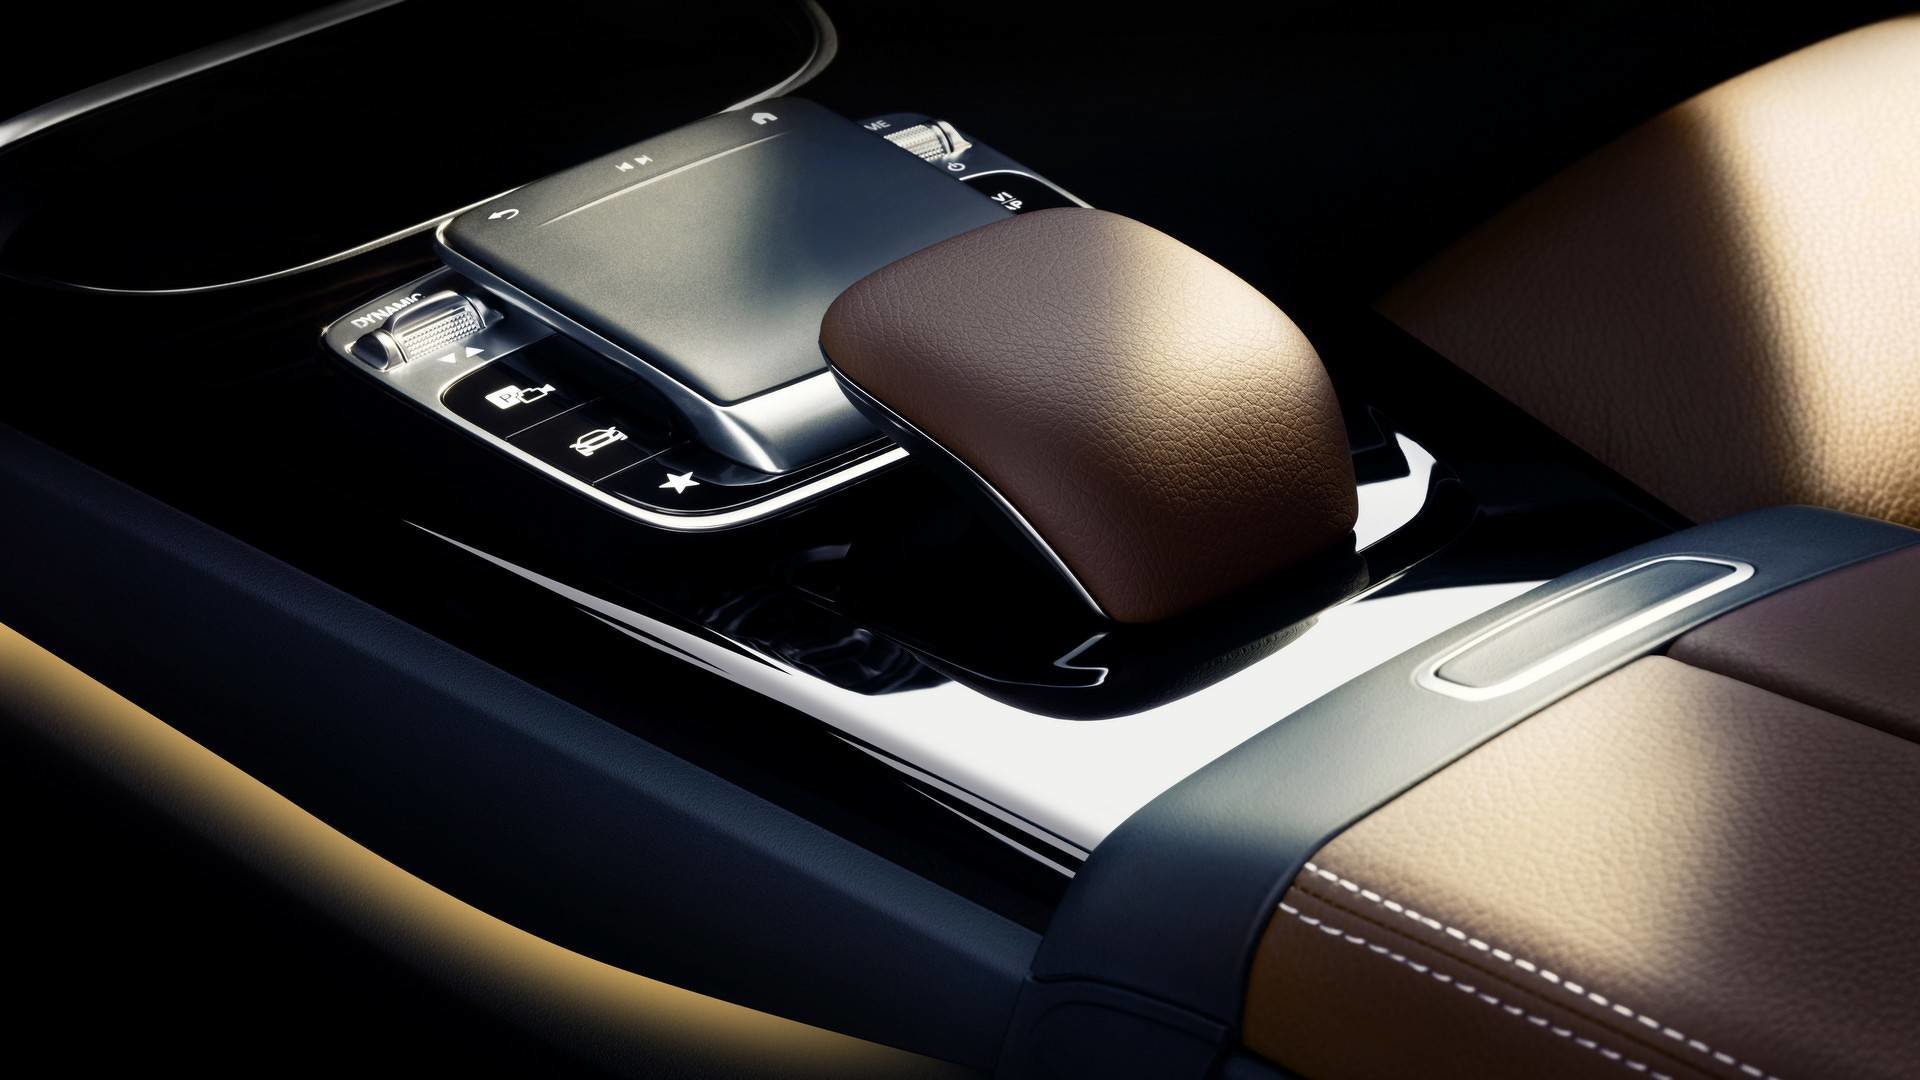 Interiér nové generace Mercedes-Benz třídy A